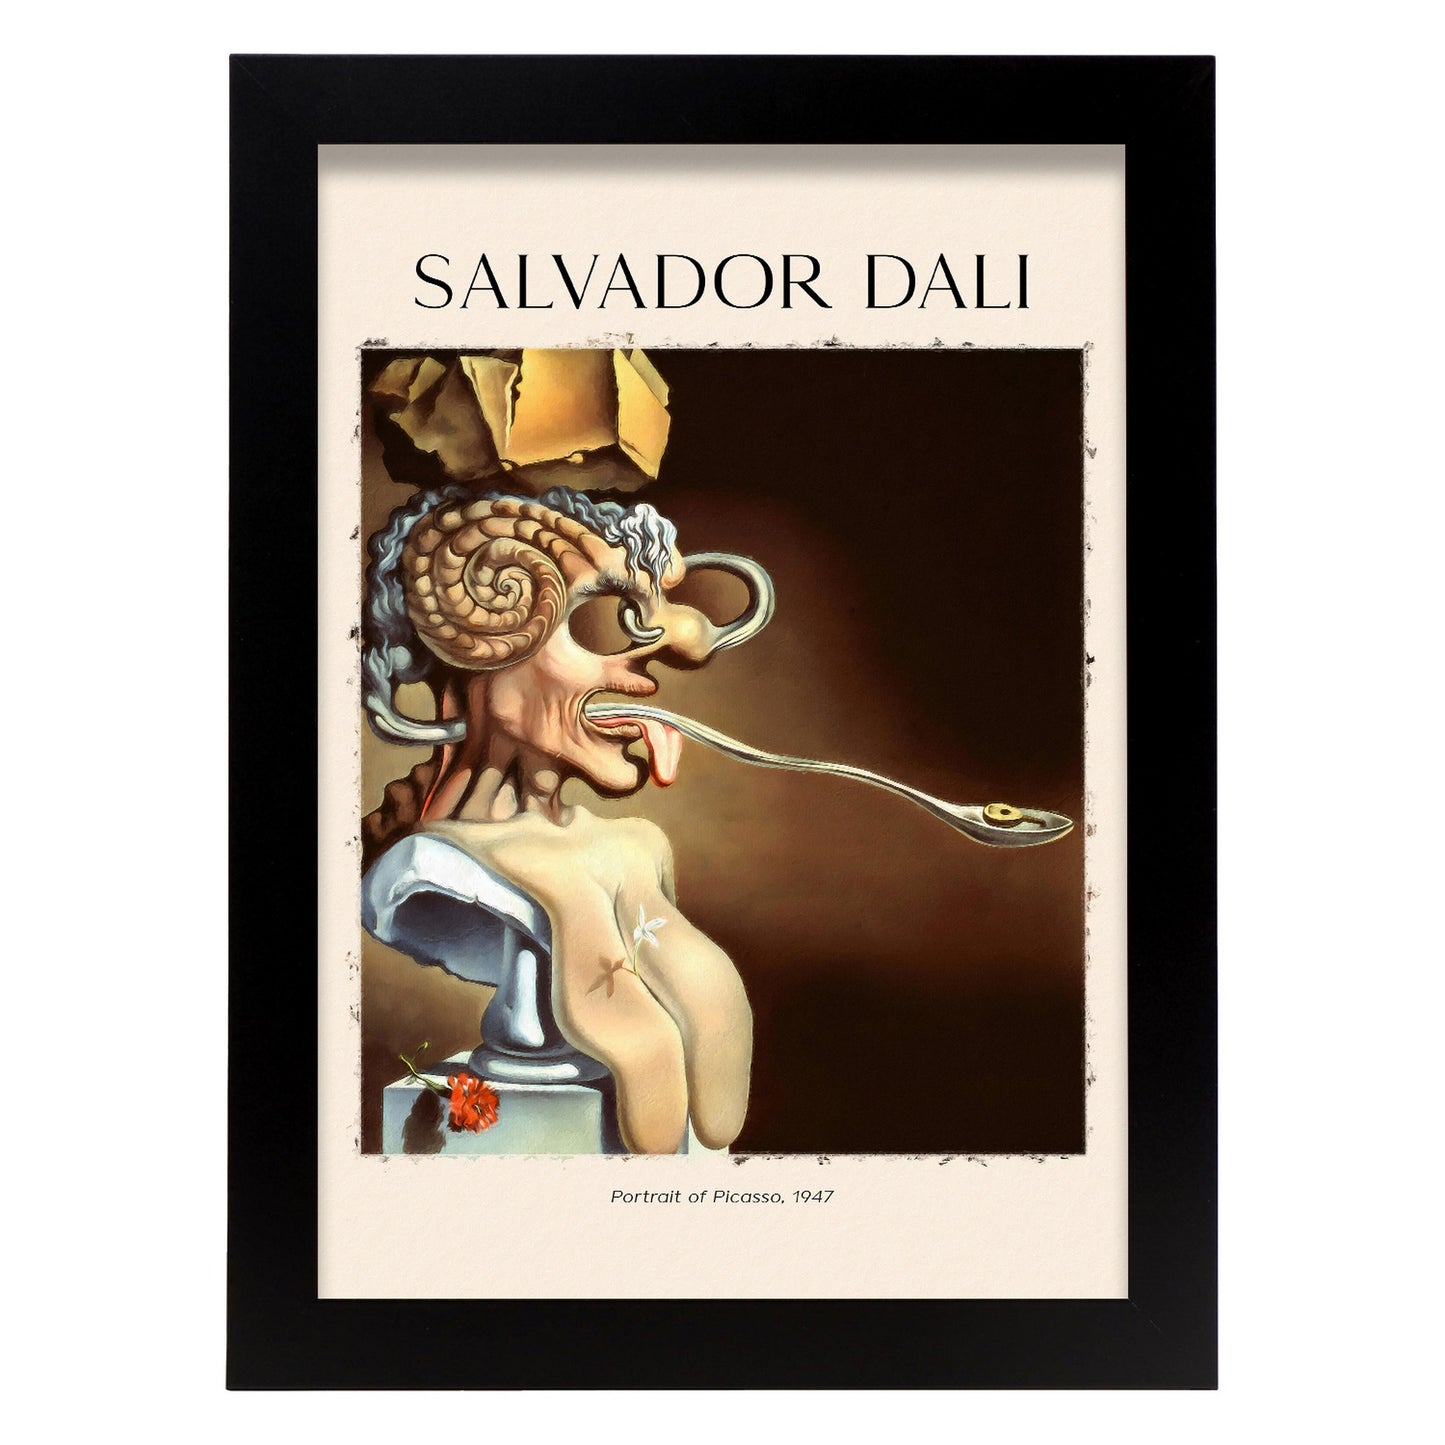 Lámina de Retrato de Picasso inspirada en Salvador Dali